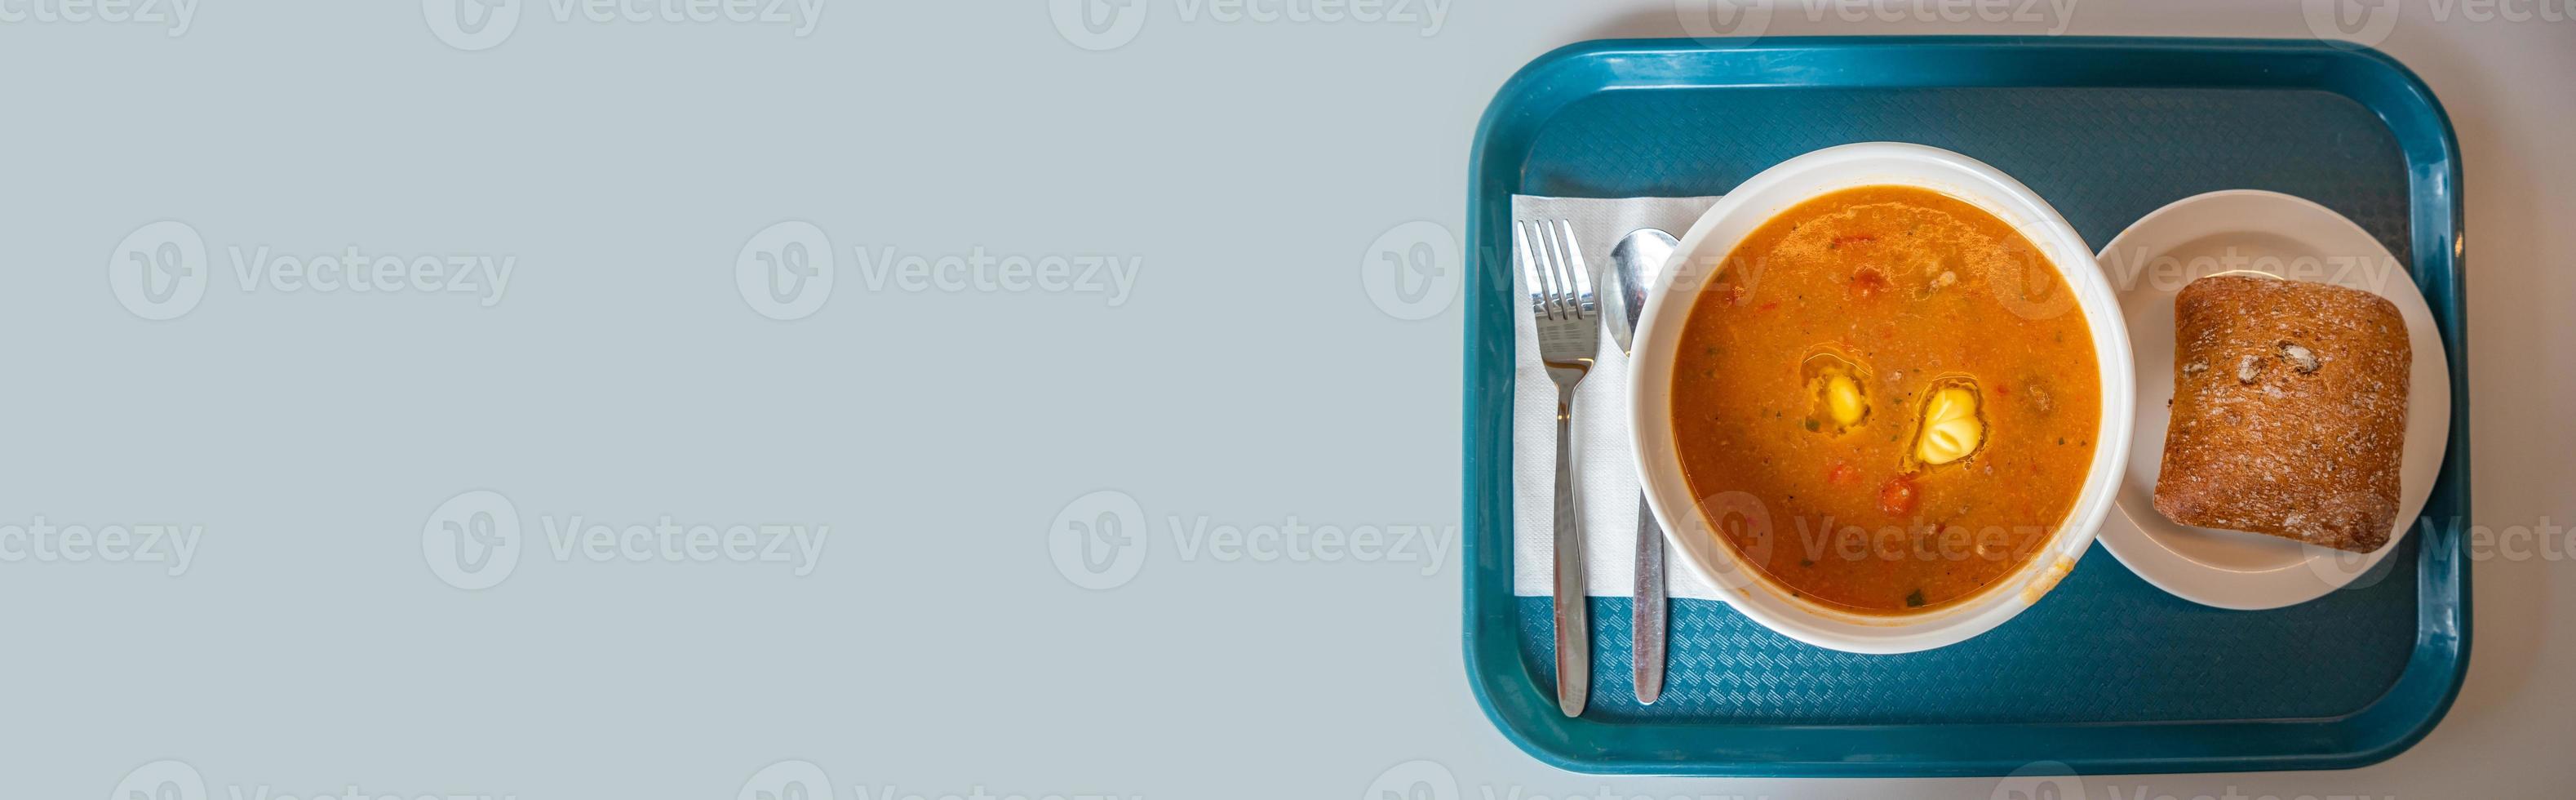 banner met heerlijke en smakelijke soep met groenten, tomaat en vlees, zelfgebakken brood, geserveerd op een dienblad met vork en lepel met lichtblauwe gladde achtergrond voor kopieerruimtetekst, details foto